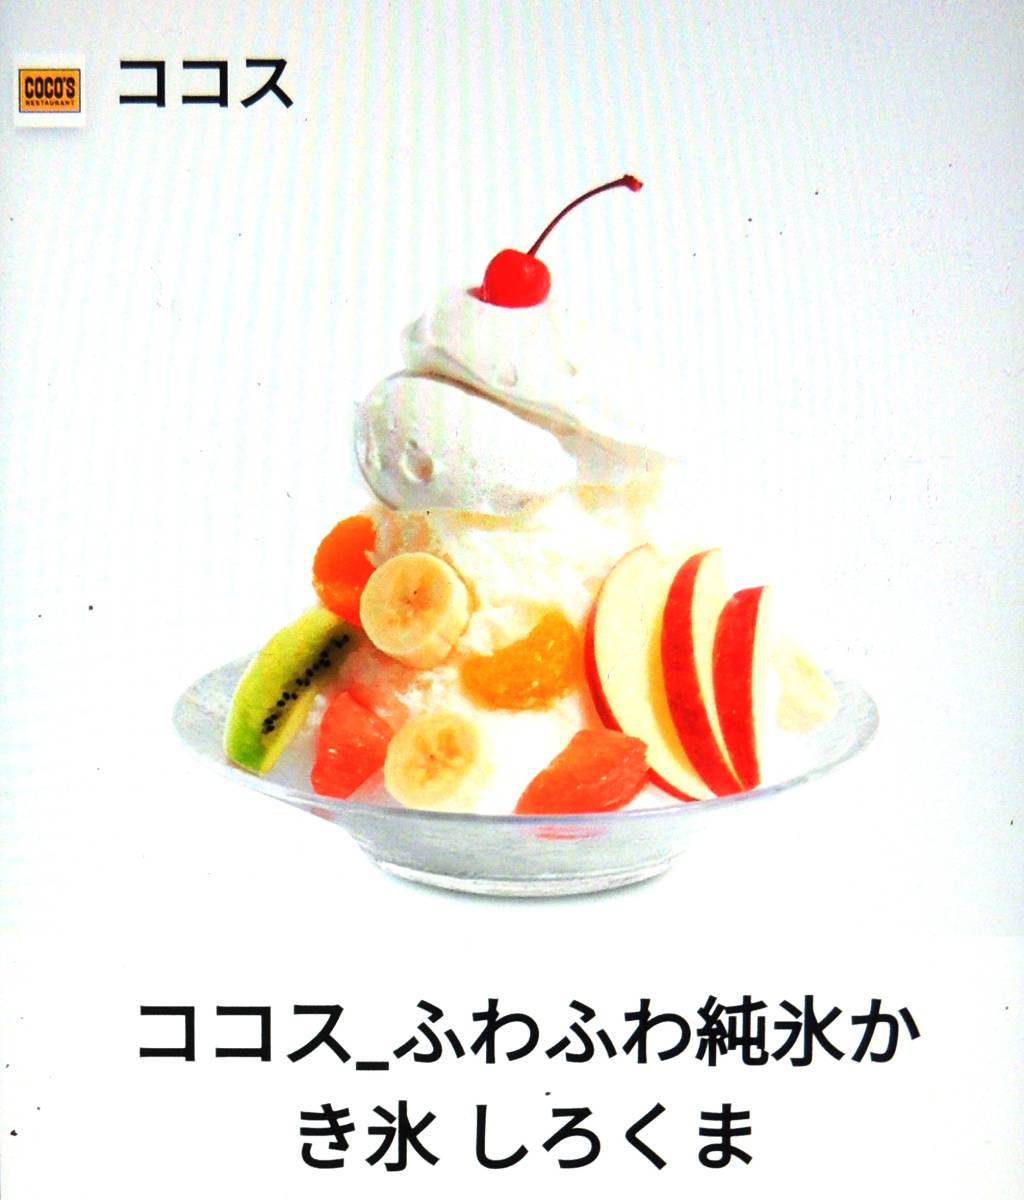 ☆ Снижение цены, быстрое решение ☆ Кокос Кокос Пушистый Пушистый Ледяной ледяной лед (759 иен/налог).